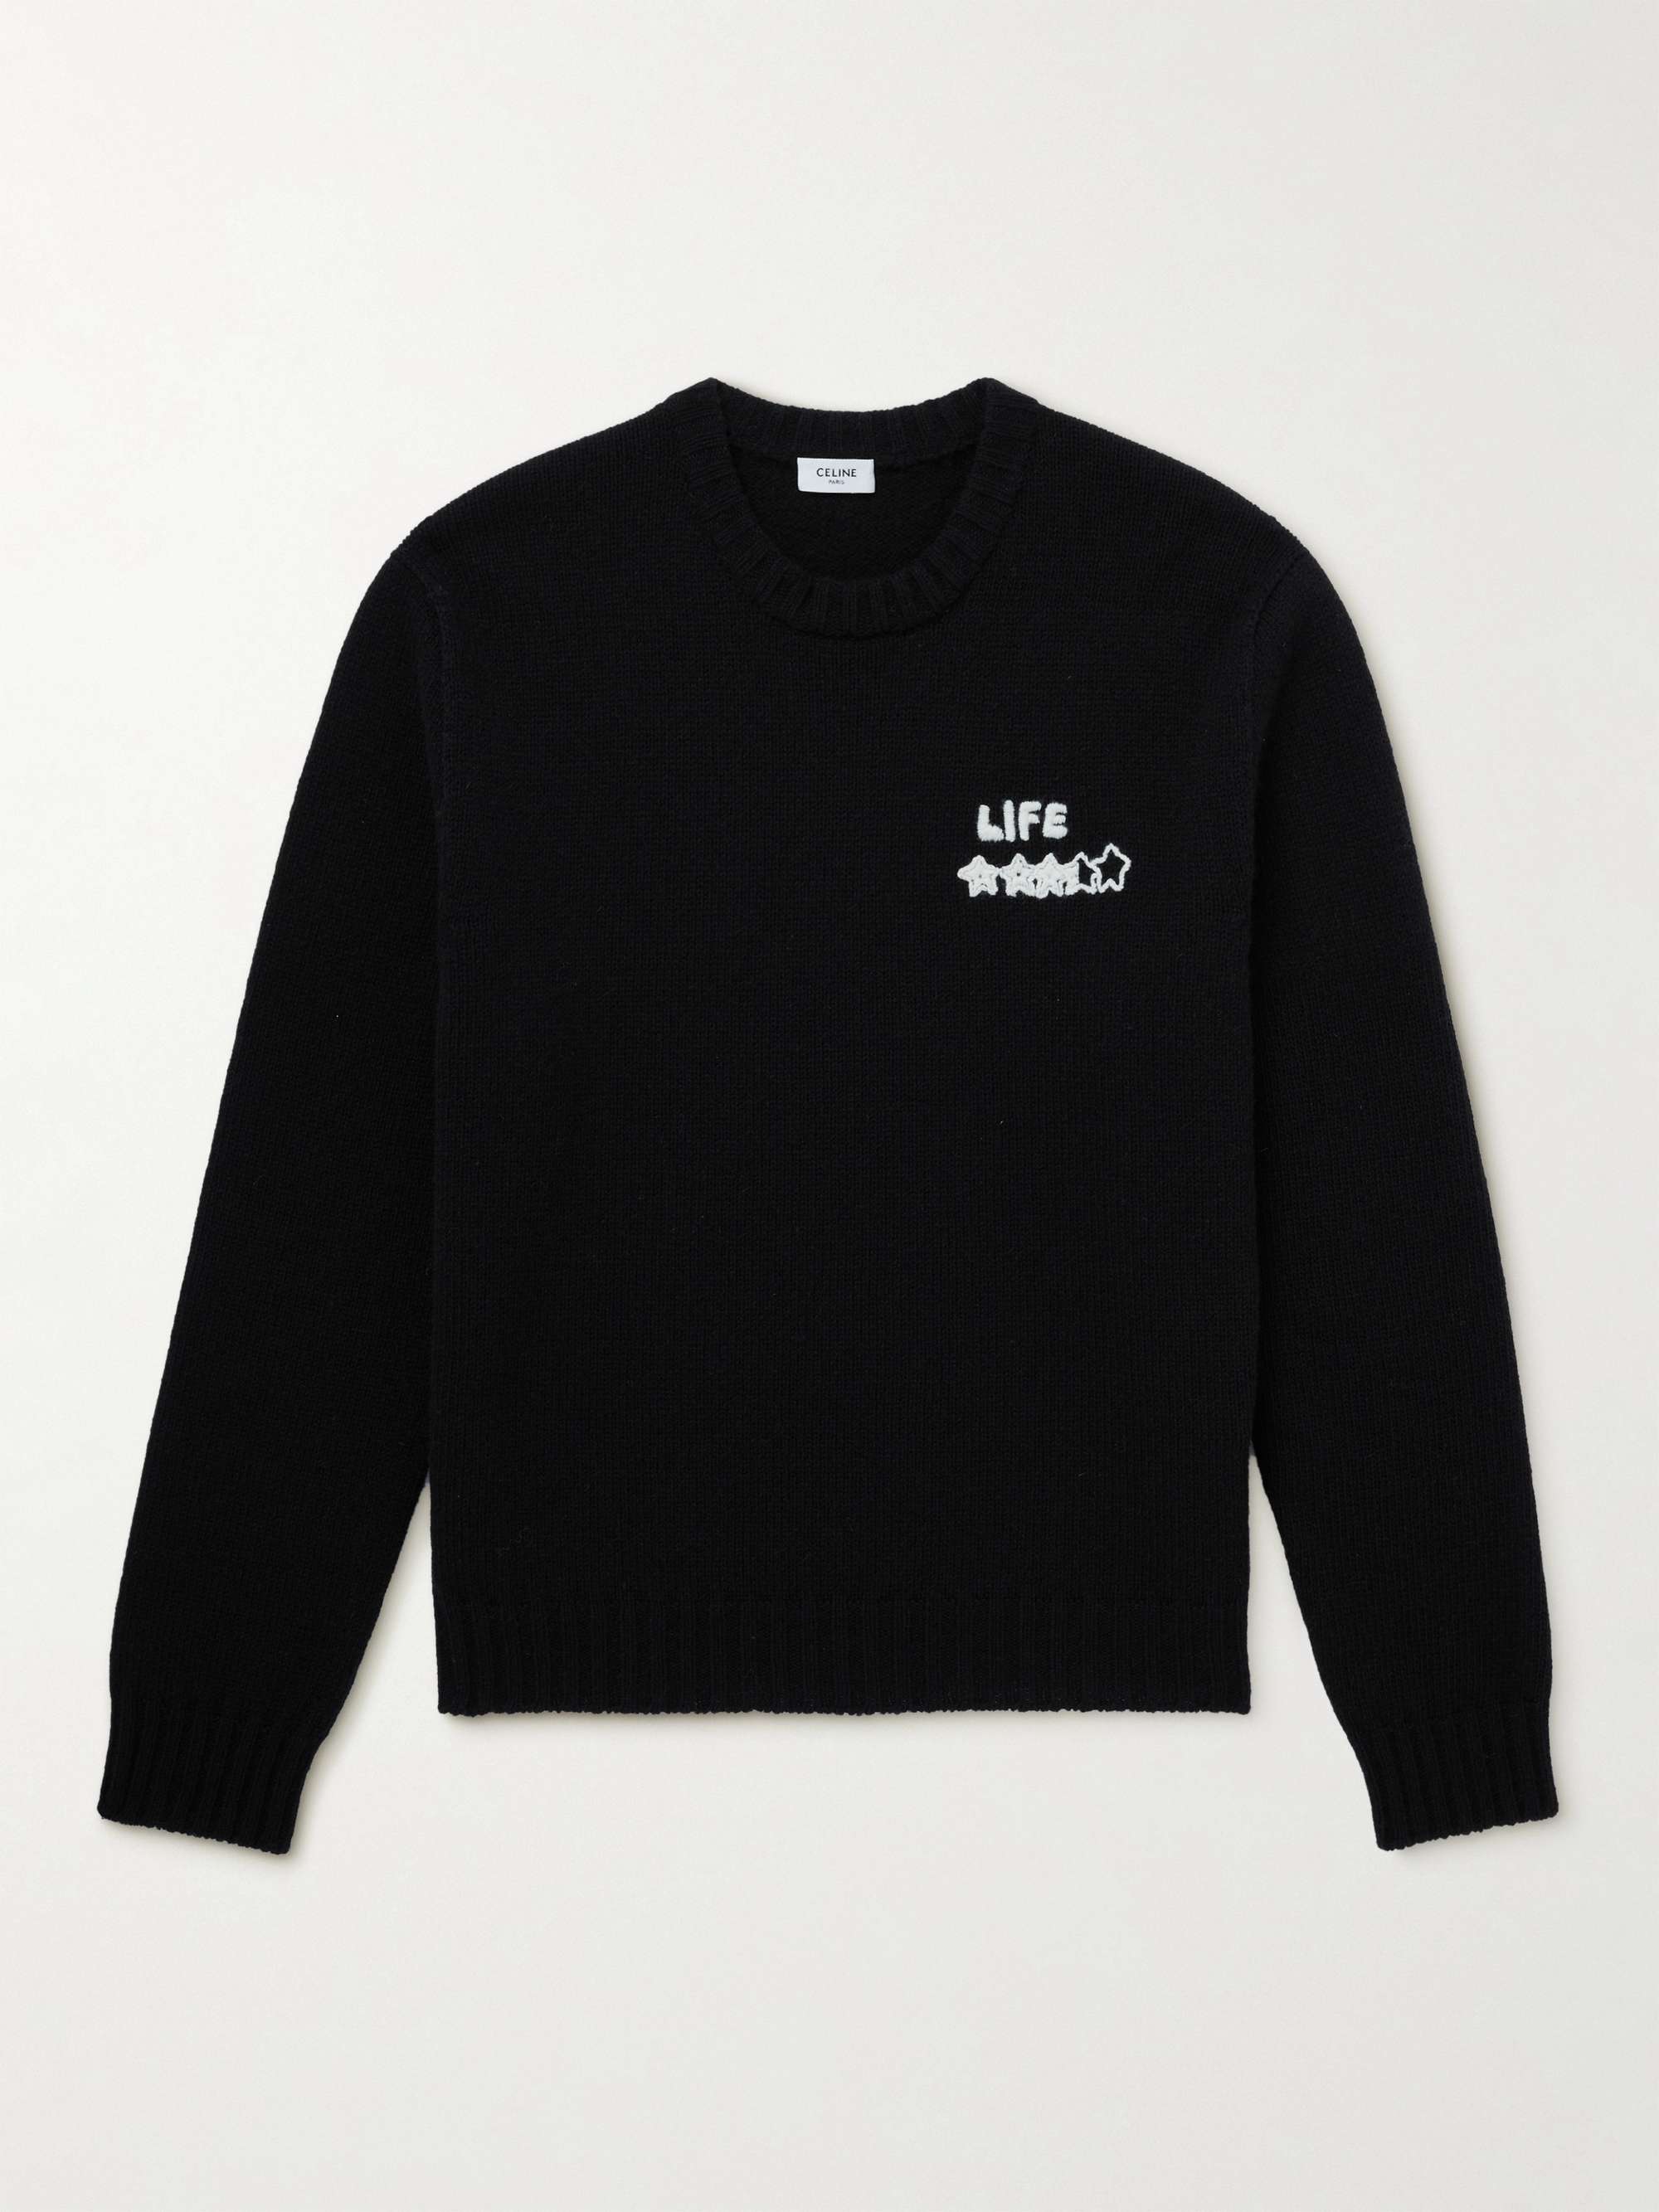 셀린느 옴므 자수 셔틀랜드 울 스웨터 CELINE HOMME Embroidered Shetland Wool Sweater,Black